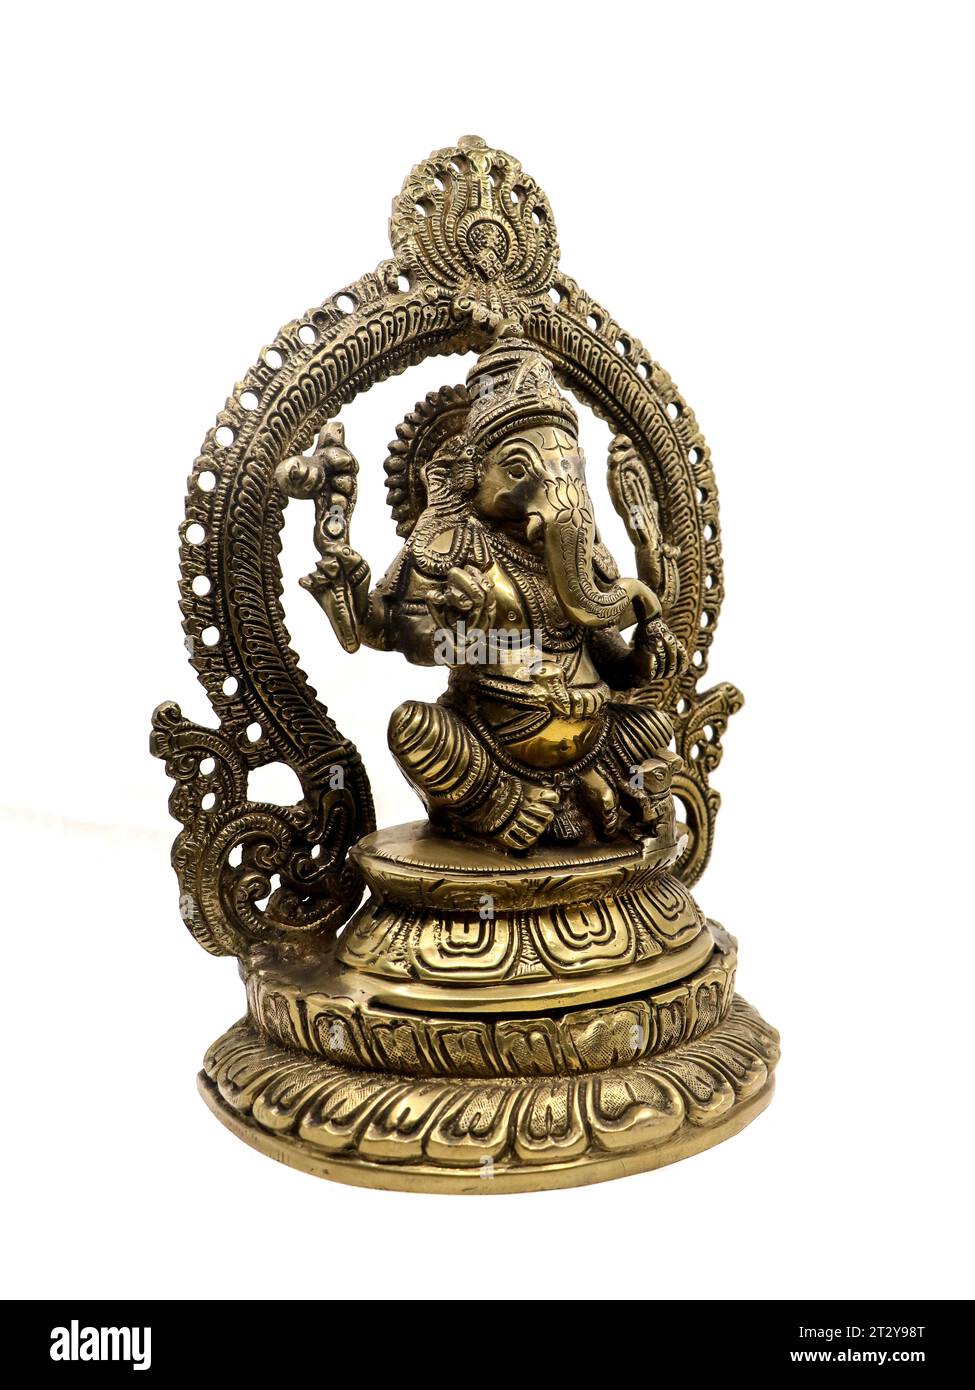 Goldene Statue von lord ganesh der hinduistischen Religion in sitzender Position mit mehreren Händen, handgefertigte antike Statue mit geschnitzten Details verziert isoliert Stockfoto